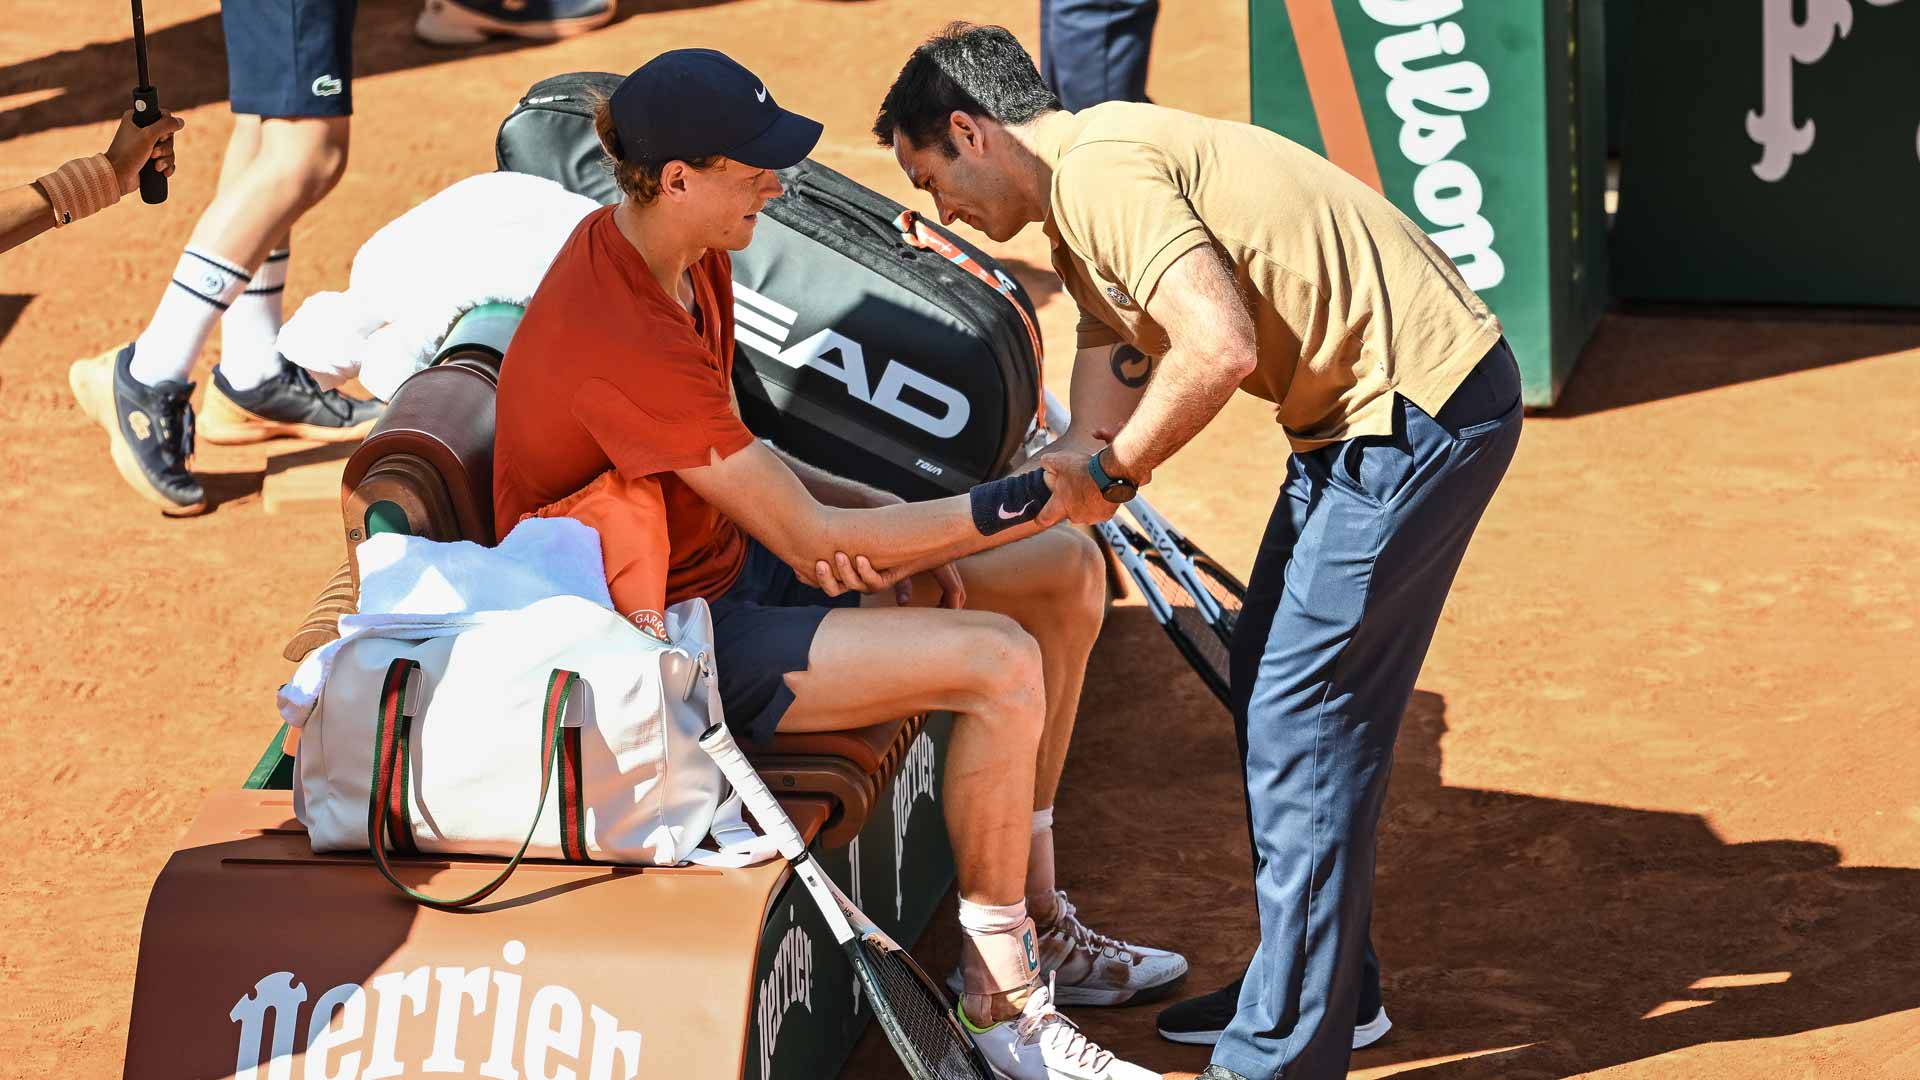 <a href='https://www.atptour.com/en/players/jannik-sinner/s0ag/overview'>Jannik Sinner</a> receives treatment during his <a href='https://www.atptour.com/en/tournaments/roland-garros/520/overview'>Roland Garros</a> semi-final against <a href='https://www.atptour.com/en/players/carlos-alcaraz/a0e2/overview'>Carlos Alcaraz</a>.